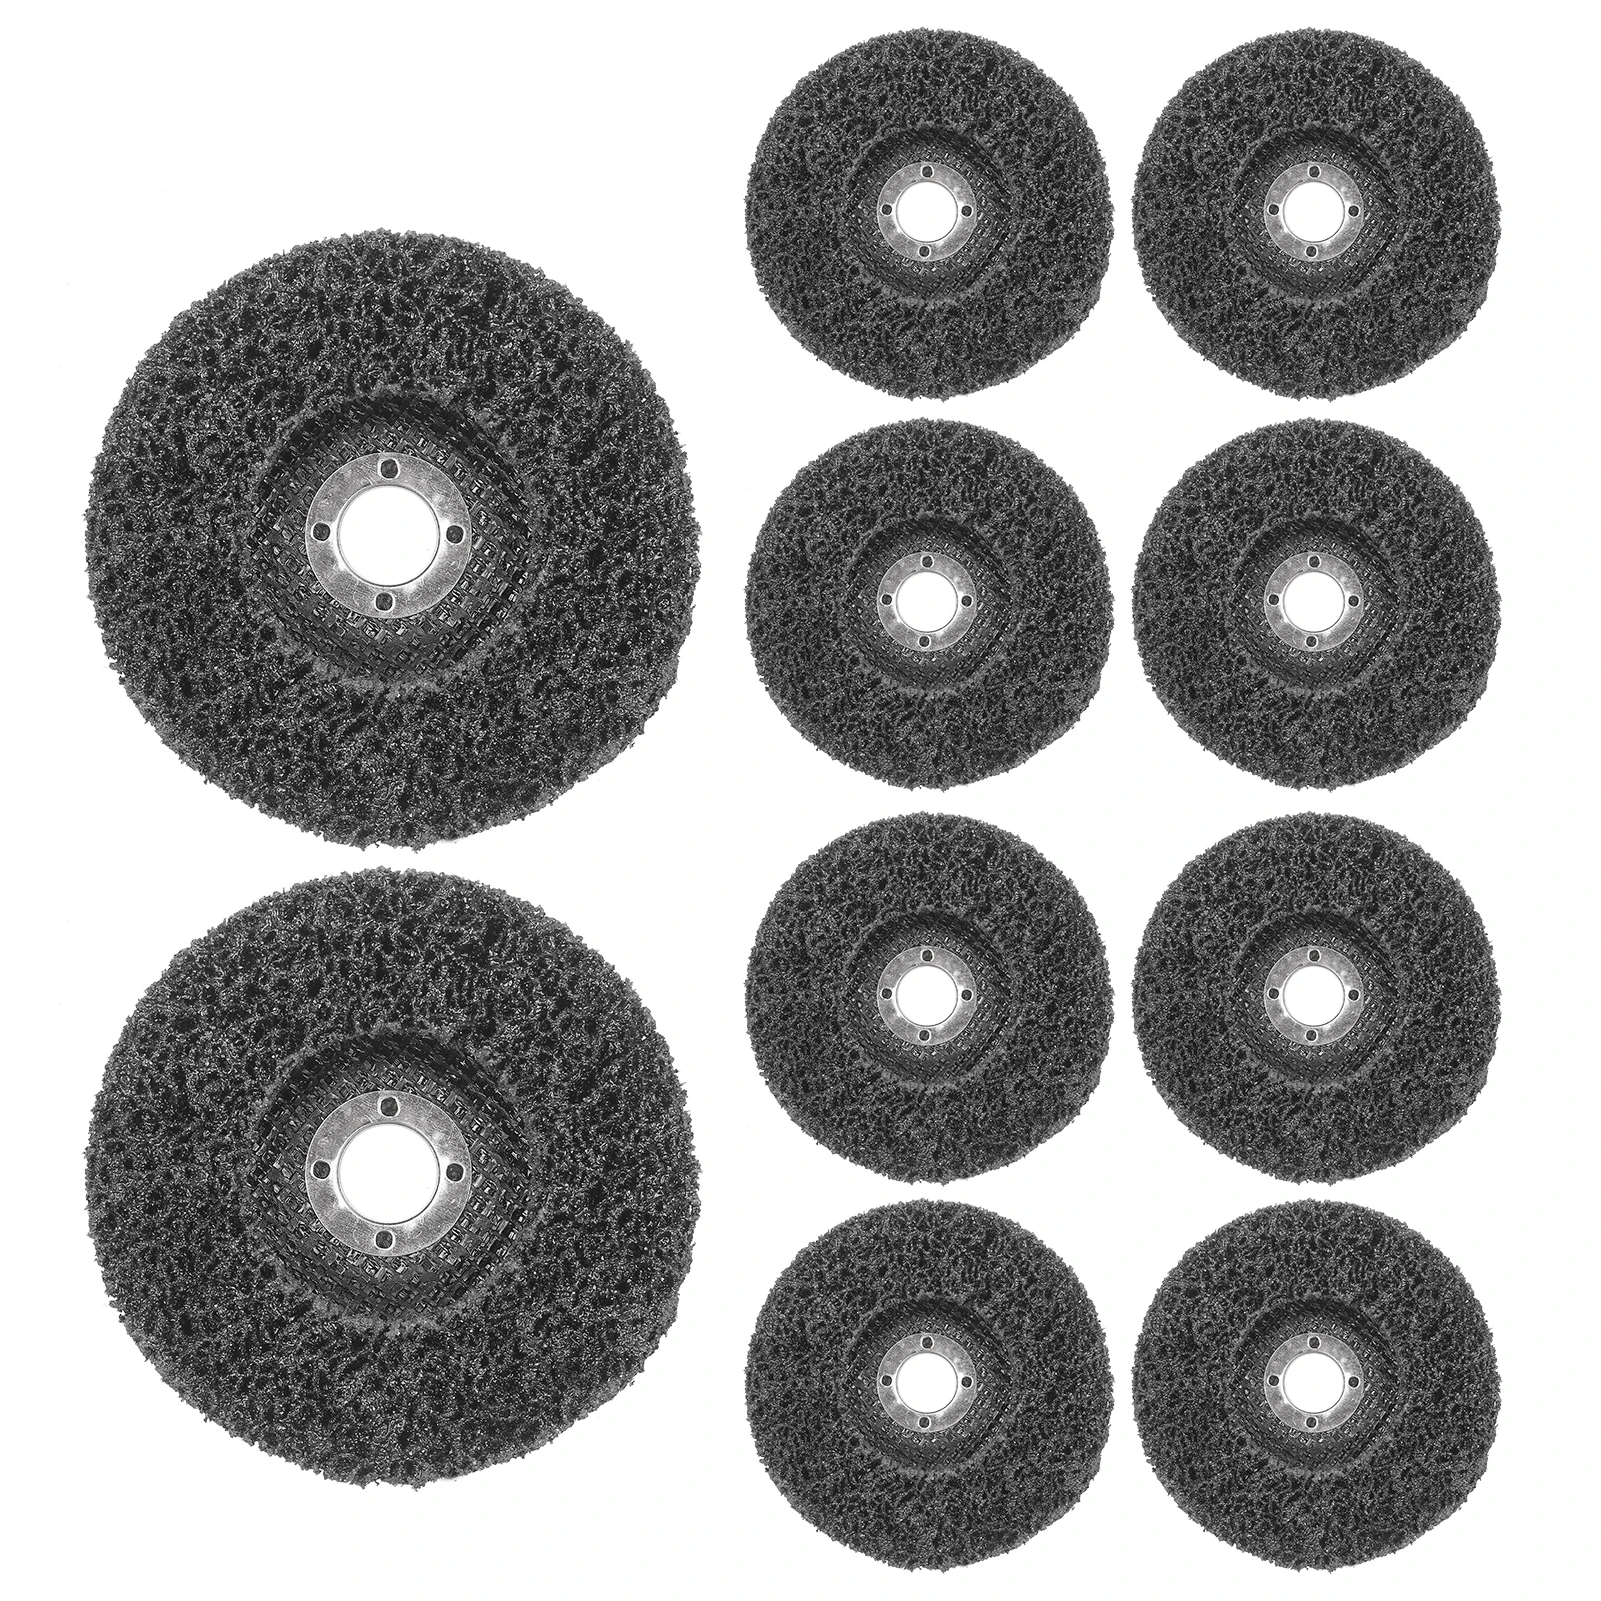 

4-в полоску диски шлифовальное колесо диск чистый удалить ржавчину Краски окисления покрытие для металла дерево Стеклопластик 10 шт./упак.